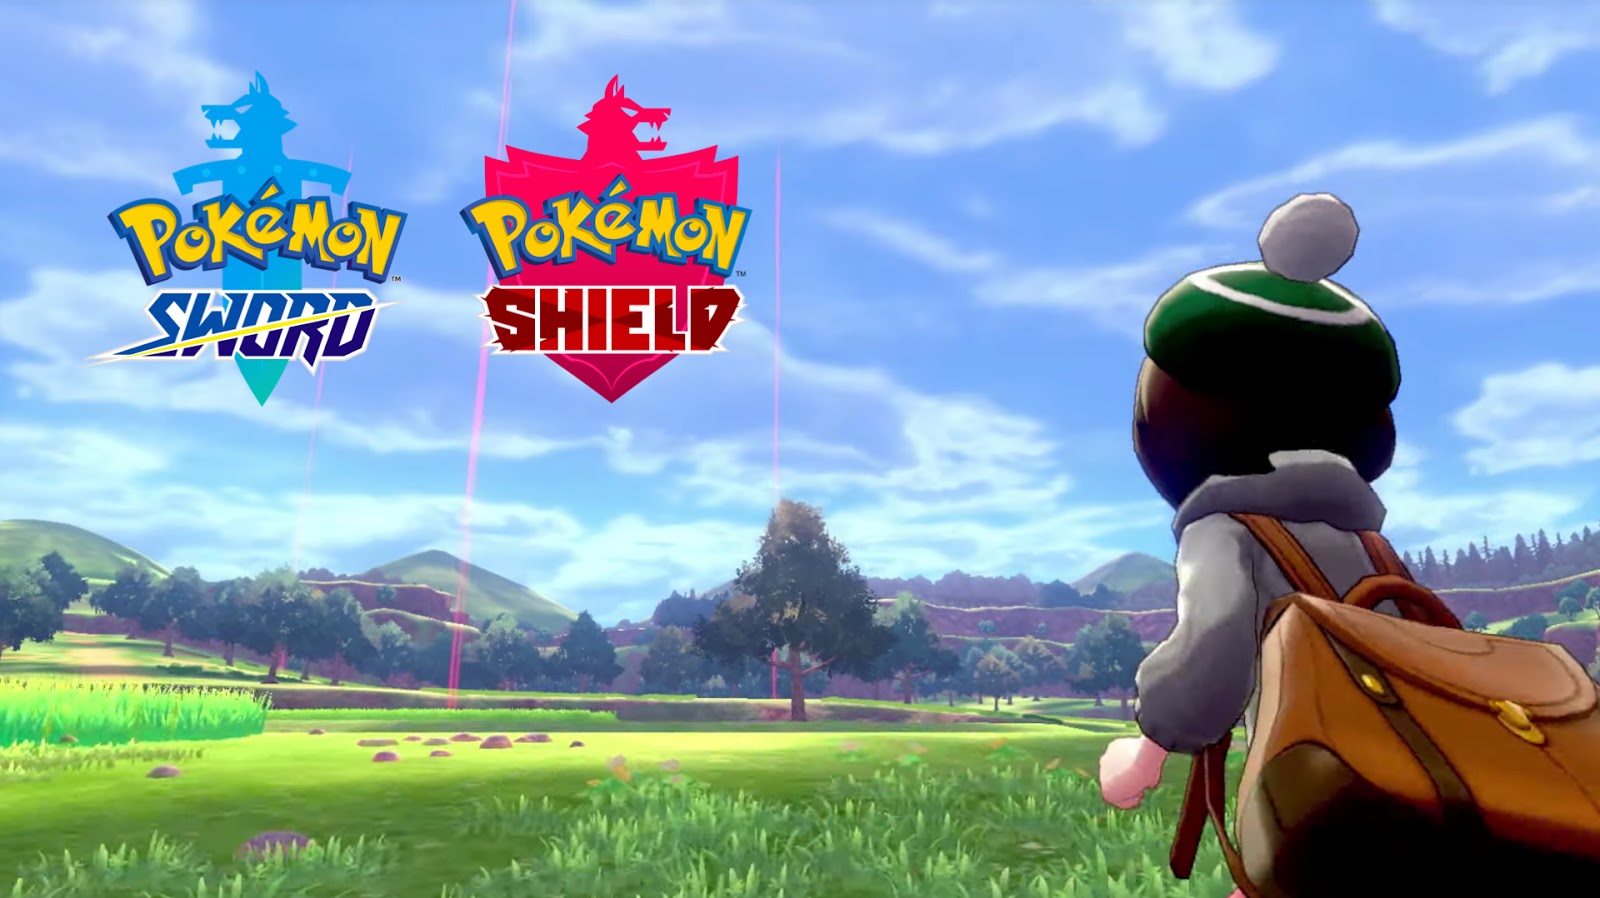 Pokémon Sword/Shield (Switch) quebra recorde e chega à nona semana seguida como o mais vendido no Japão